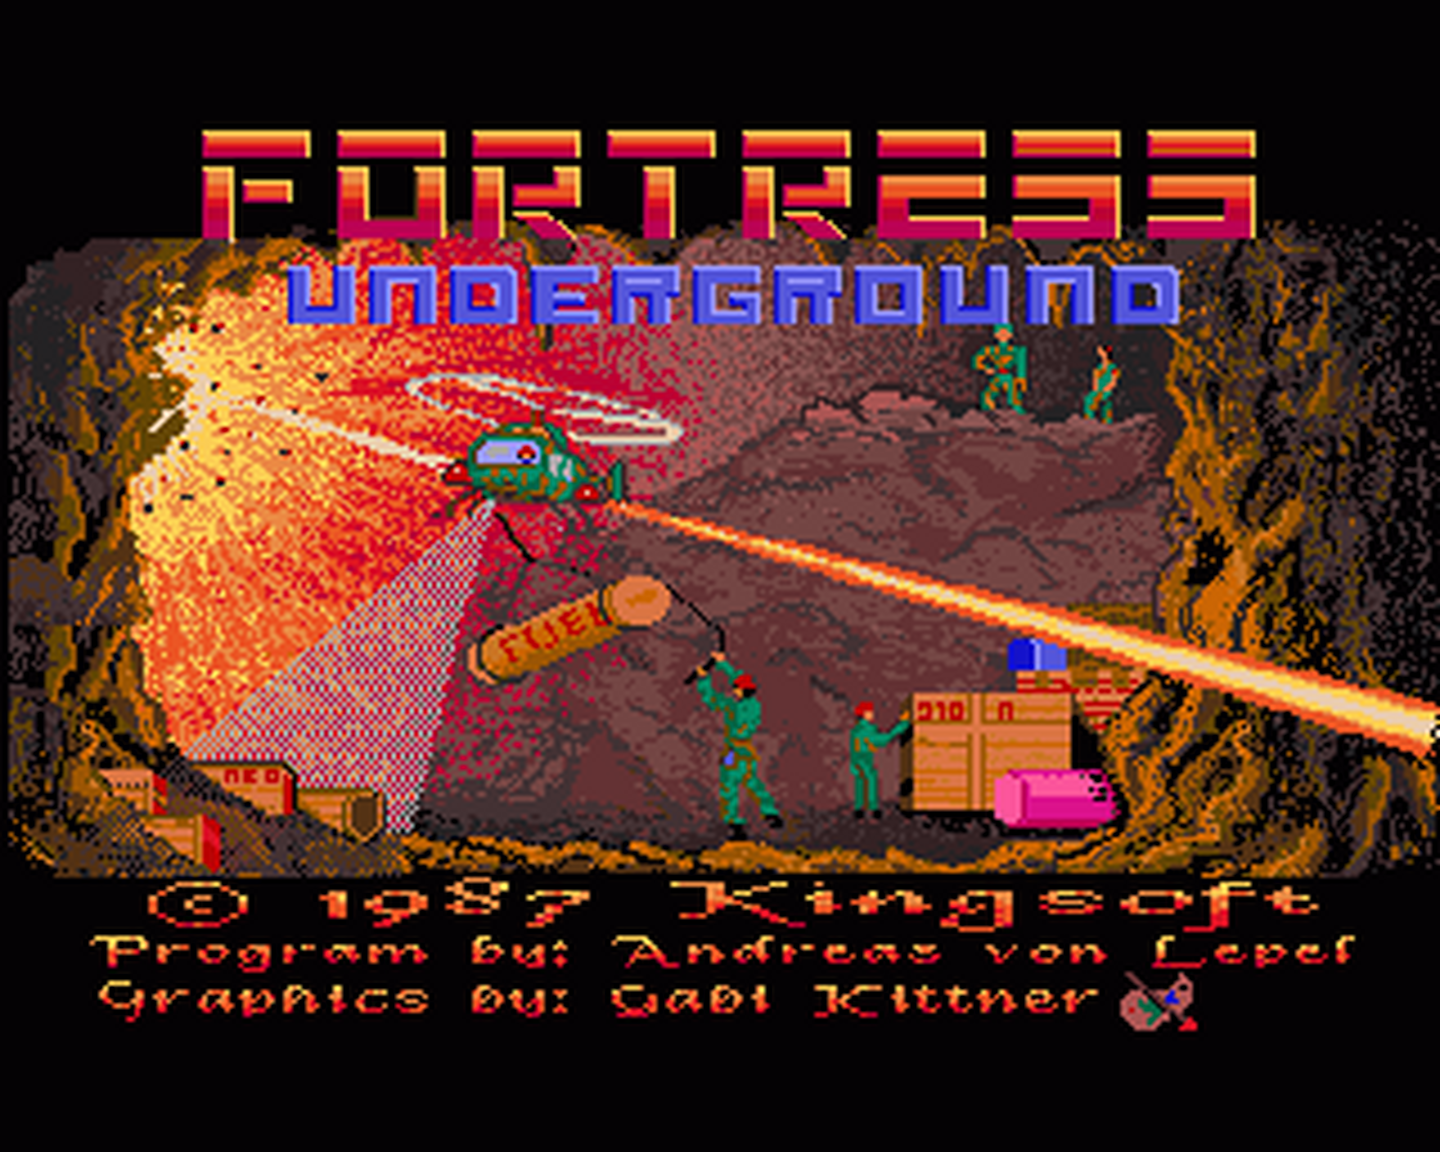 Amiga GameBase Fortress_Underground Kingsoft 1987